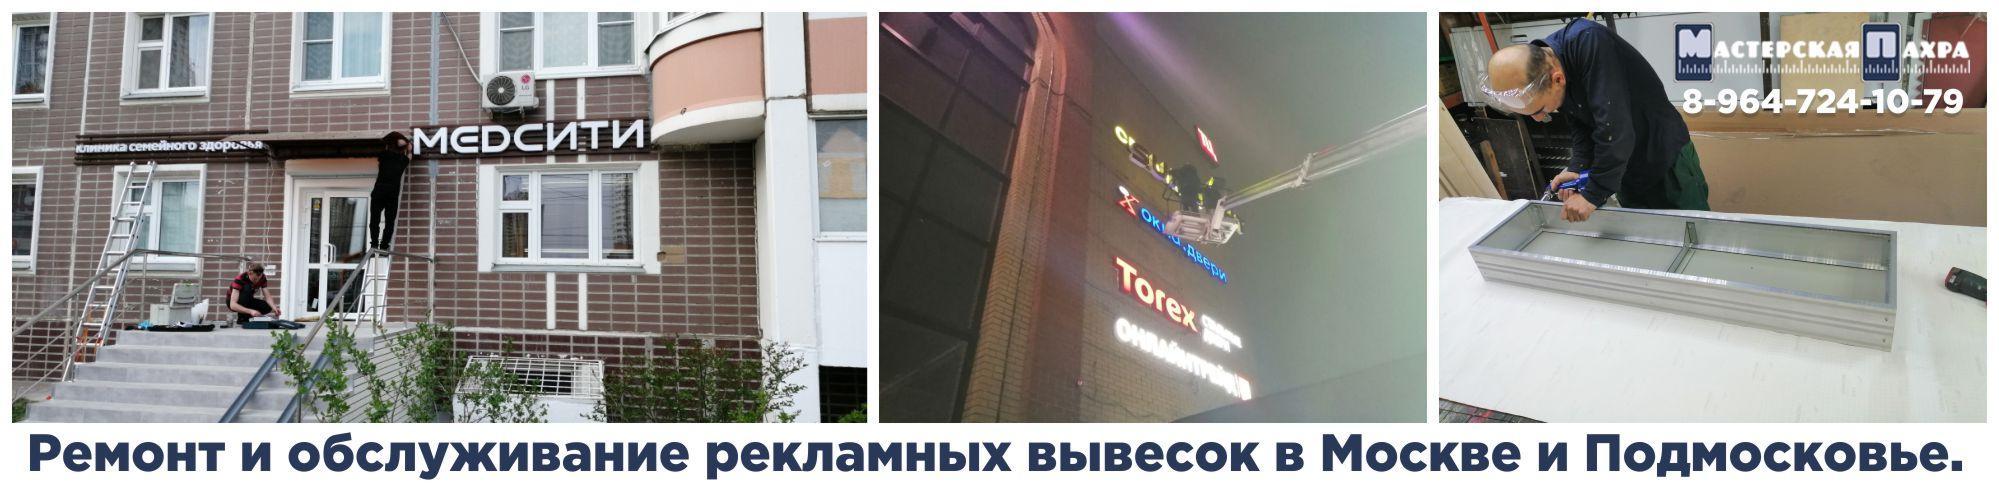 Ремонт и обслуживание рекламных вывесок в Москве и Подмосковье.